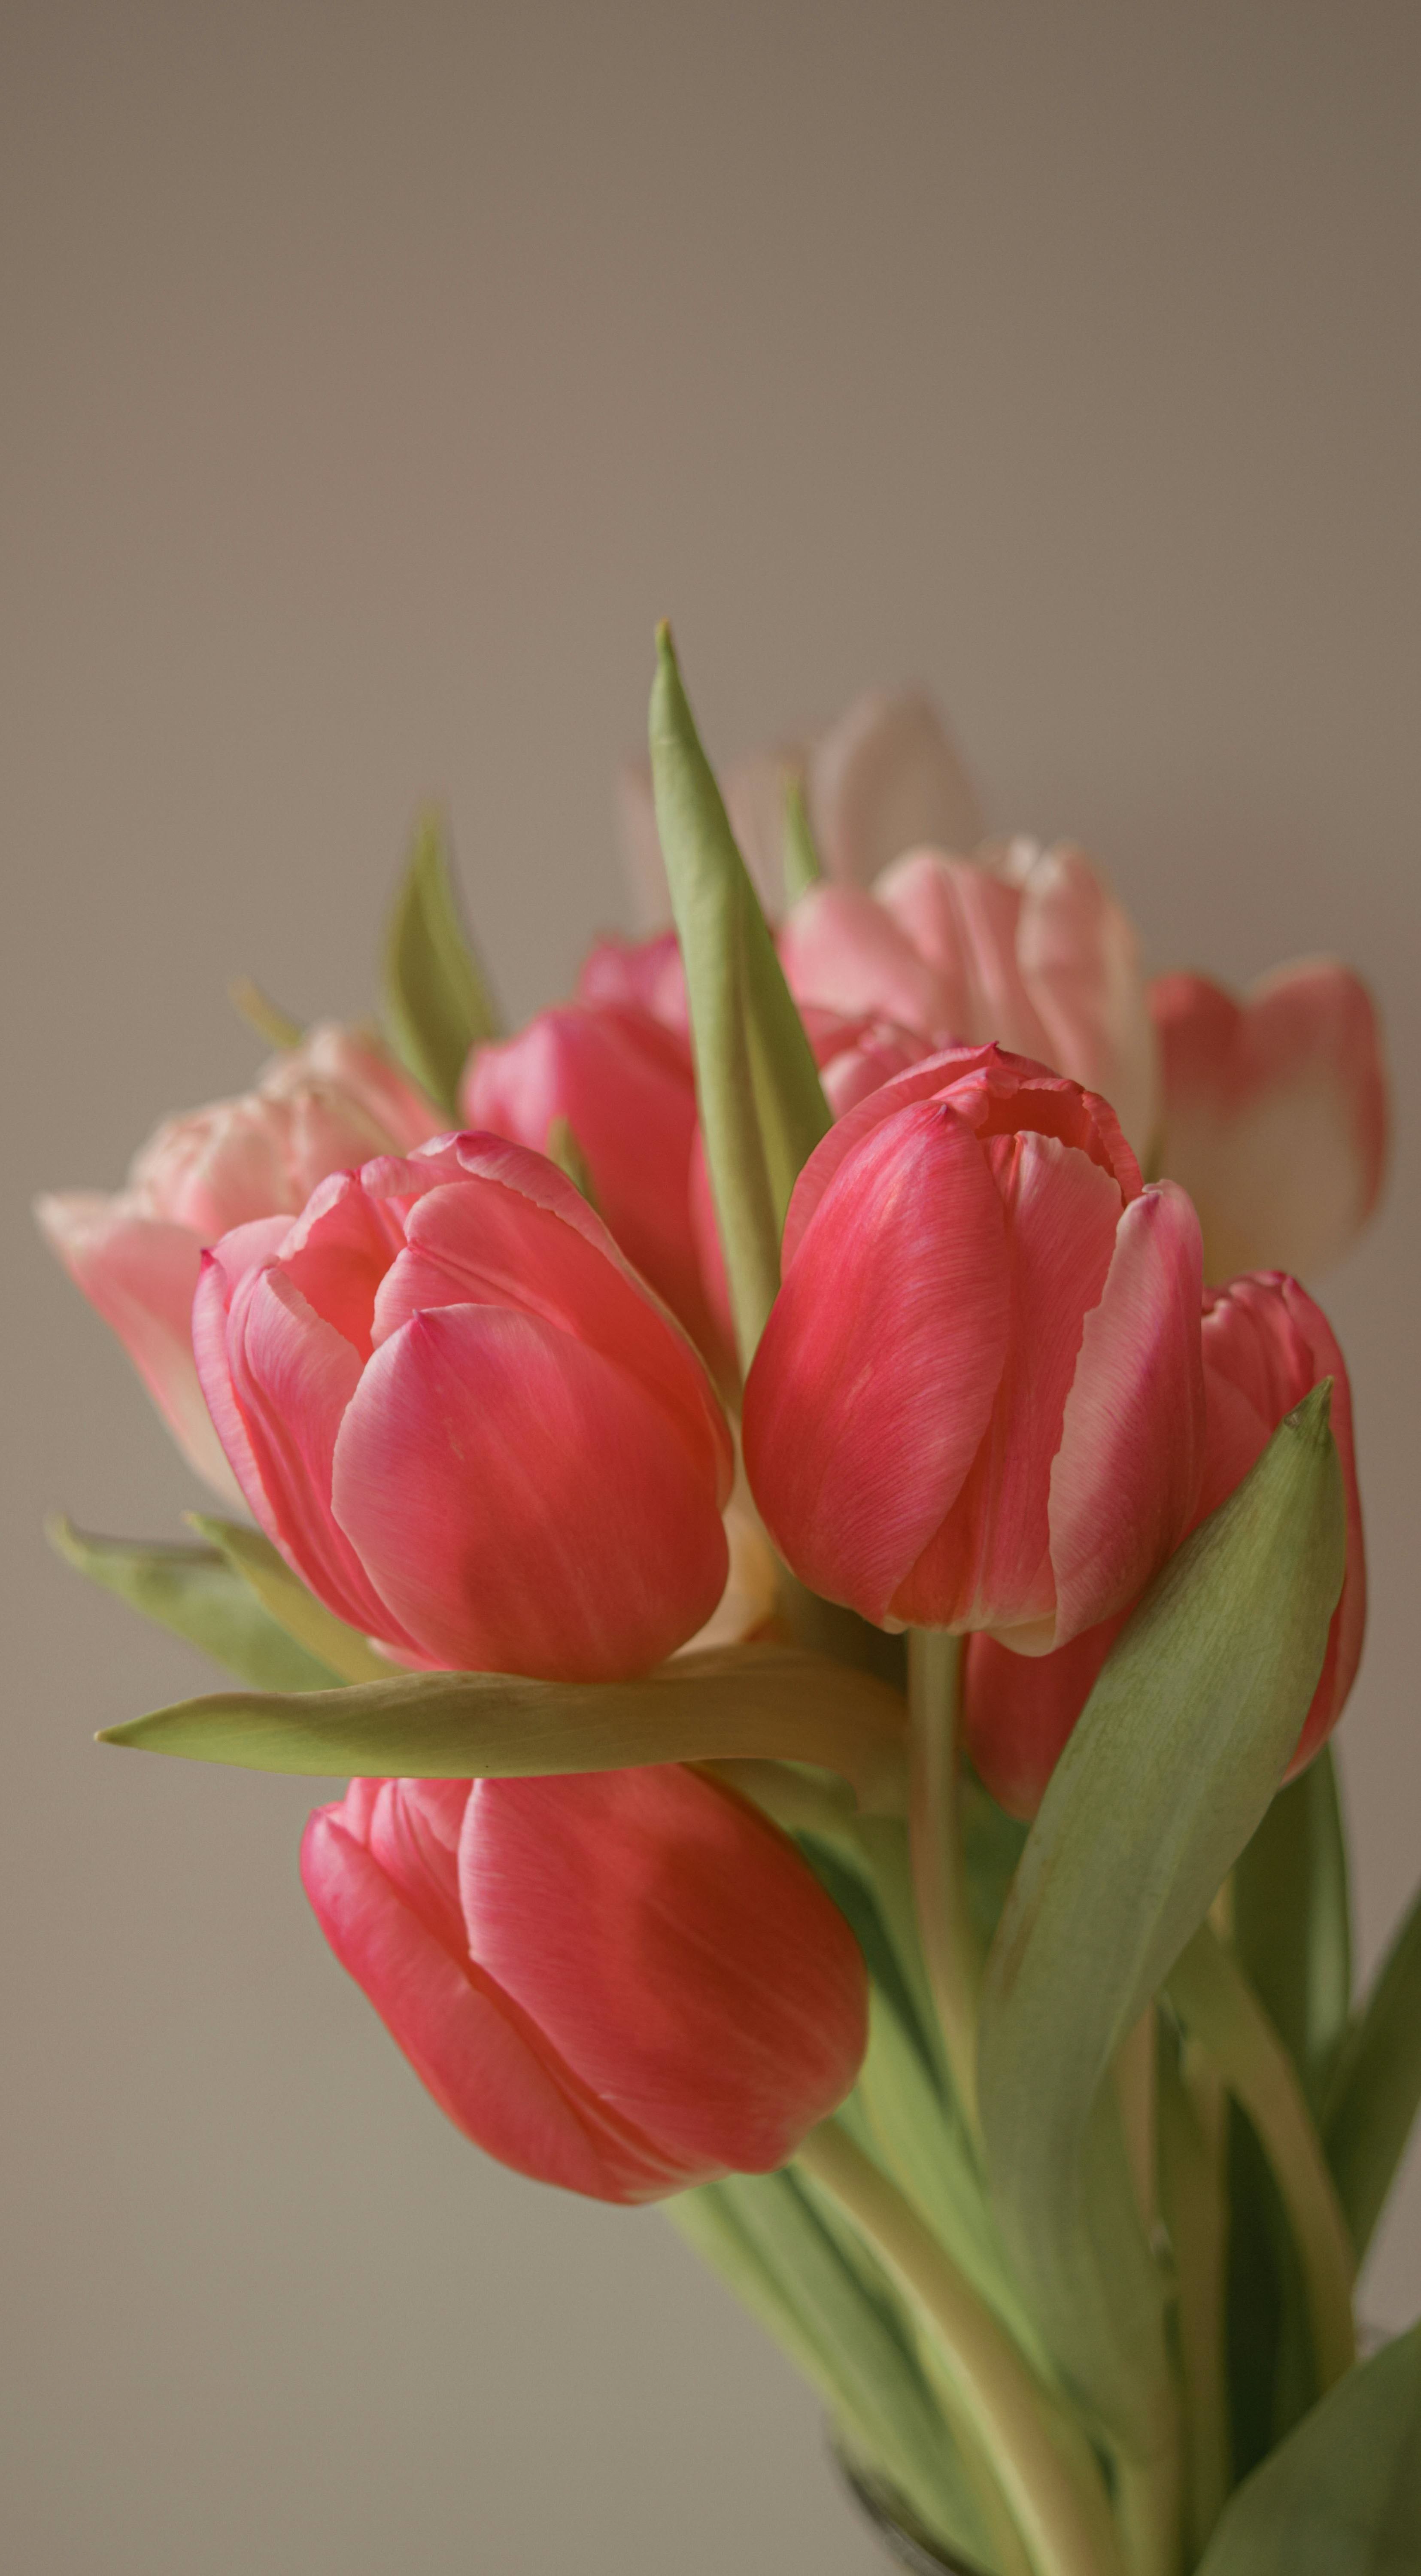 Ảnh nền hoa tulip cute cho điện thoại